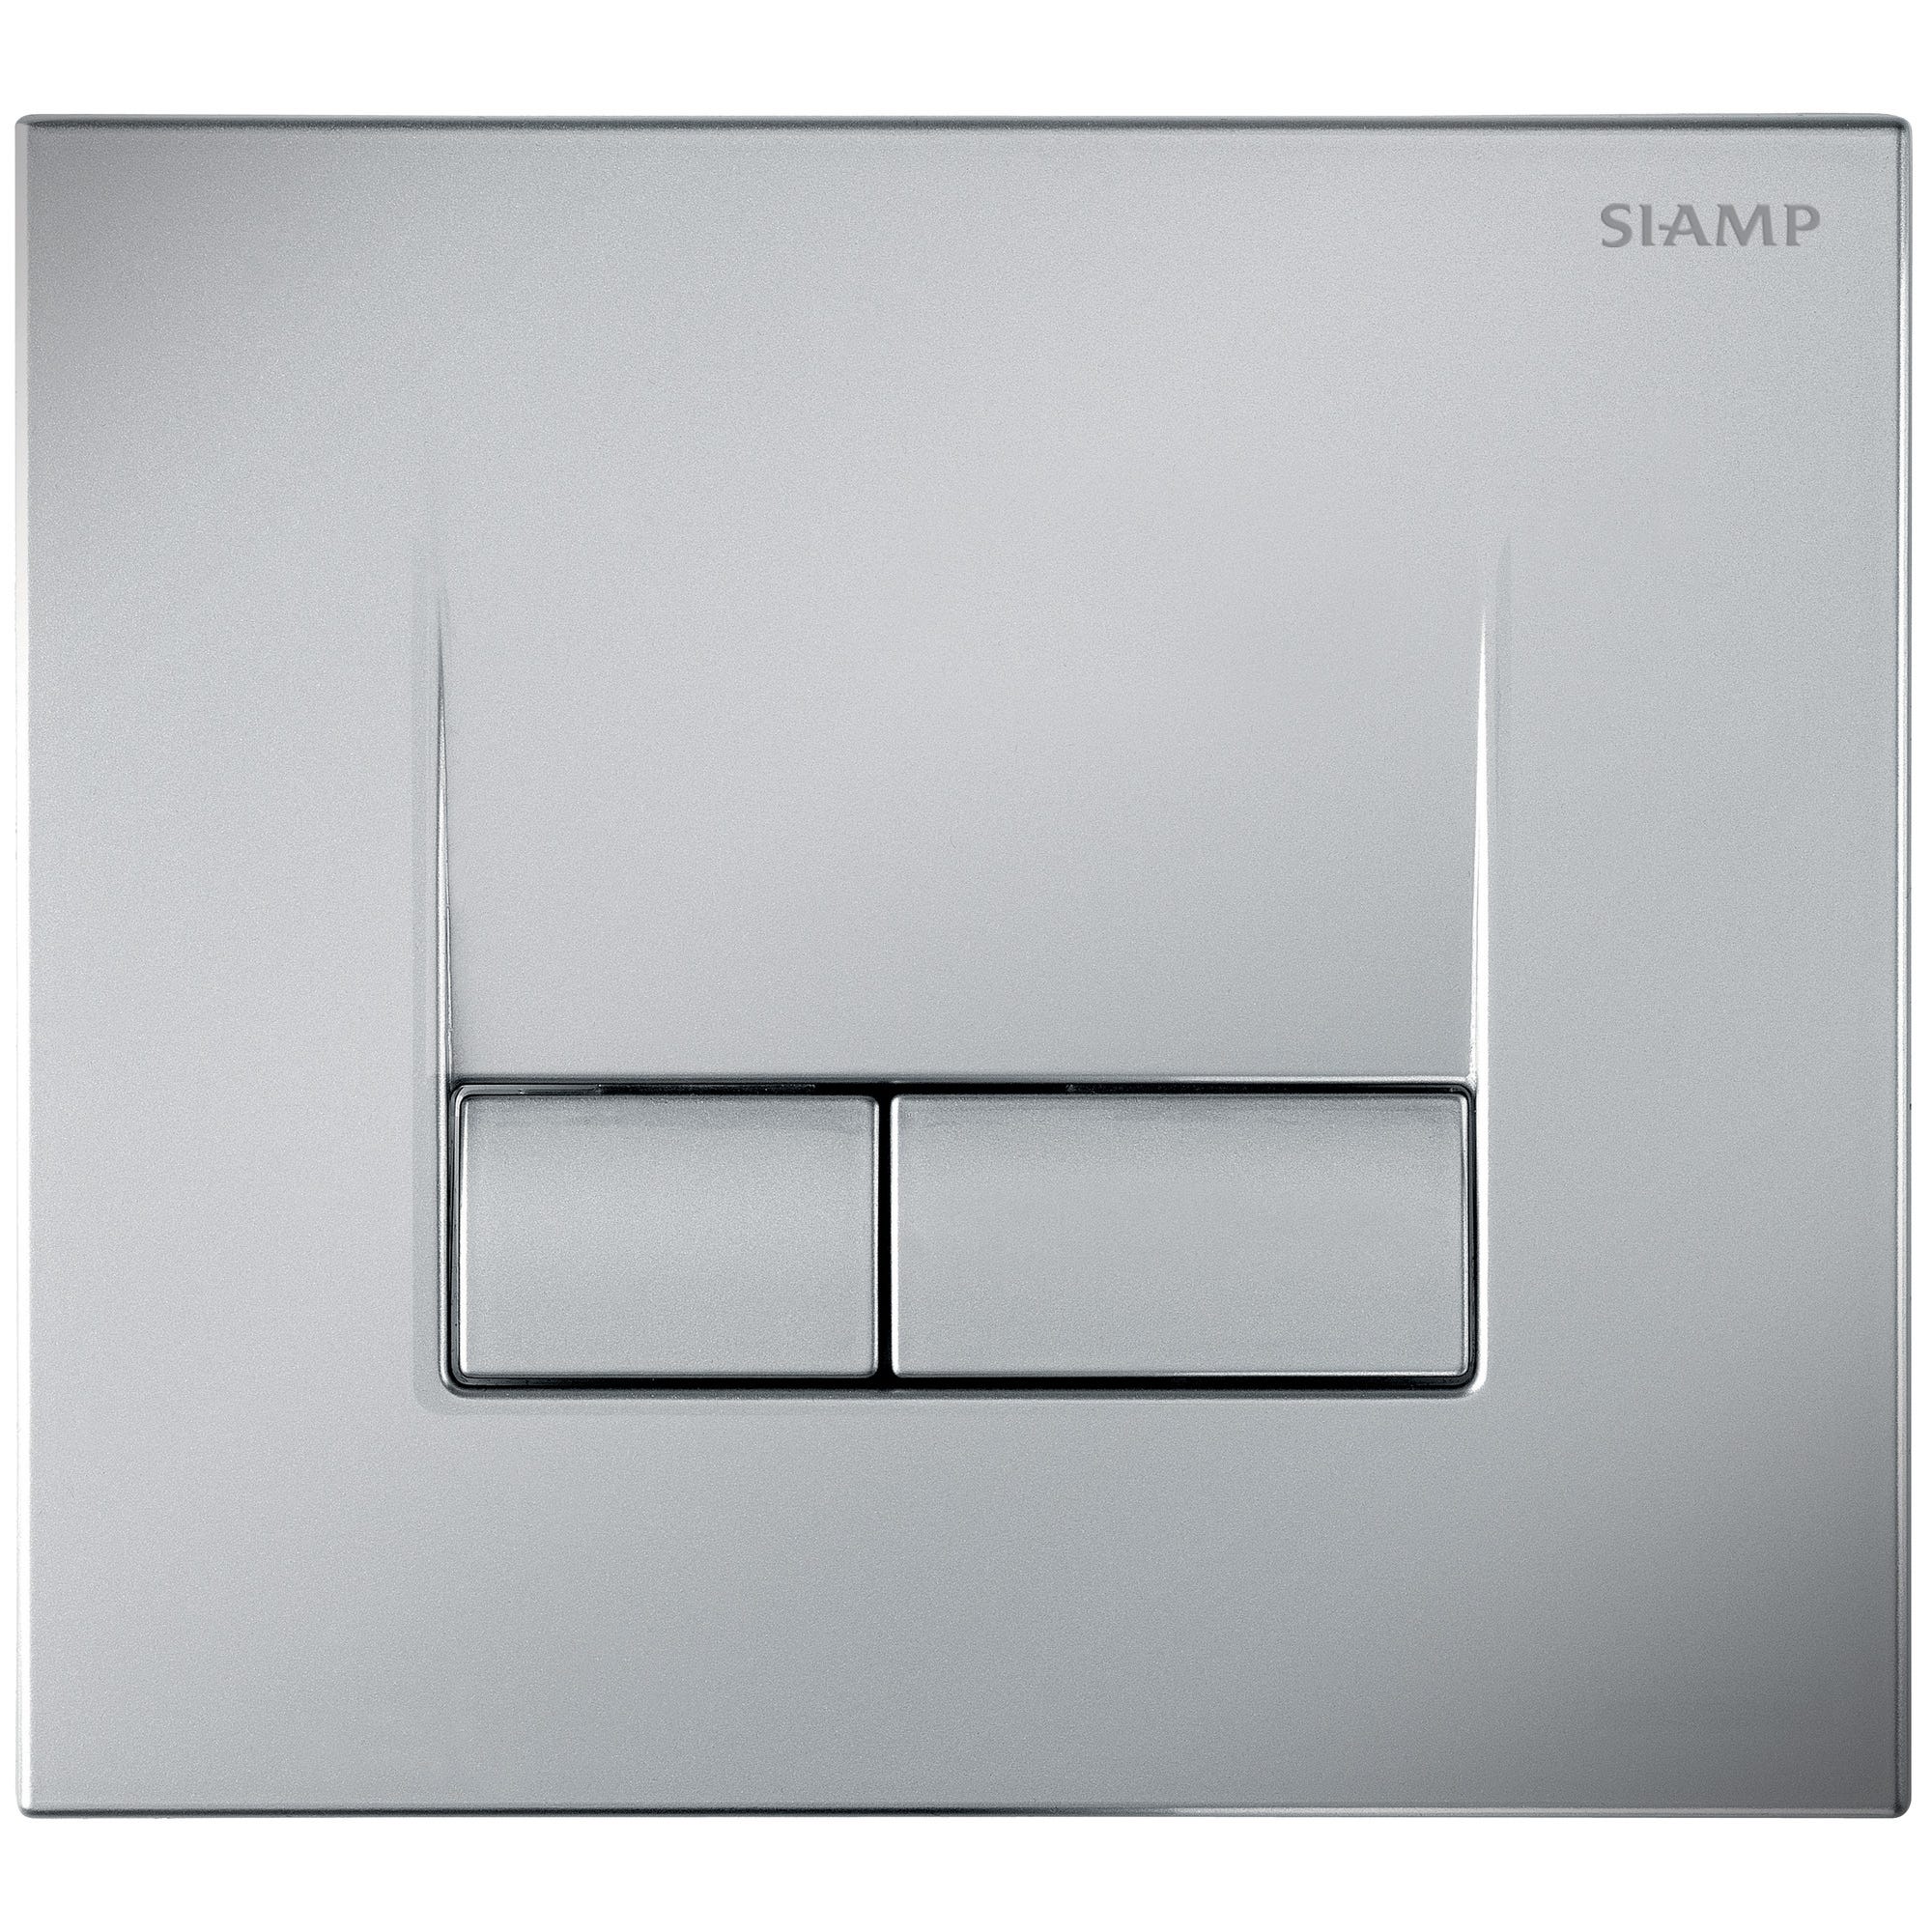 Plaque de commande pour WC suspendu aspect chromé mat clair anti-vandales/anti-empreintes Smart - SIAMP 0